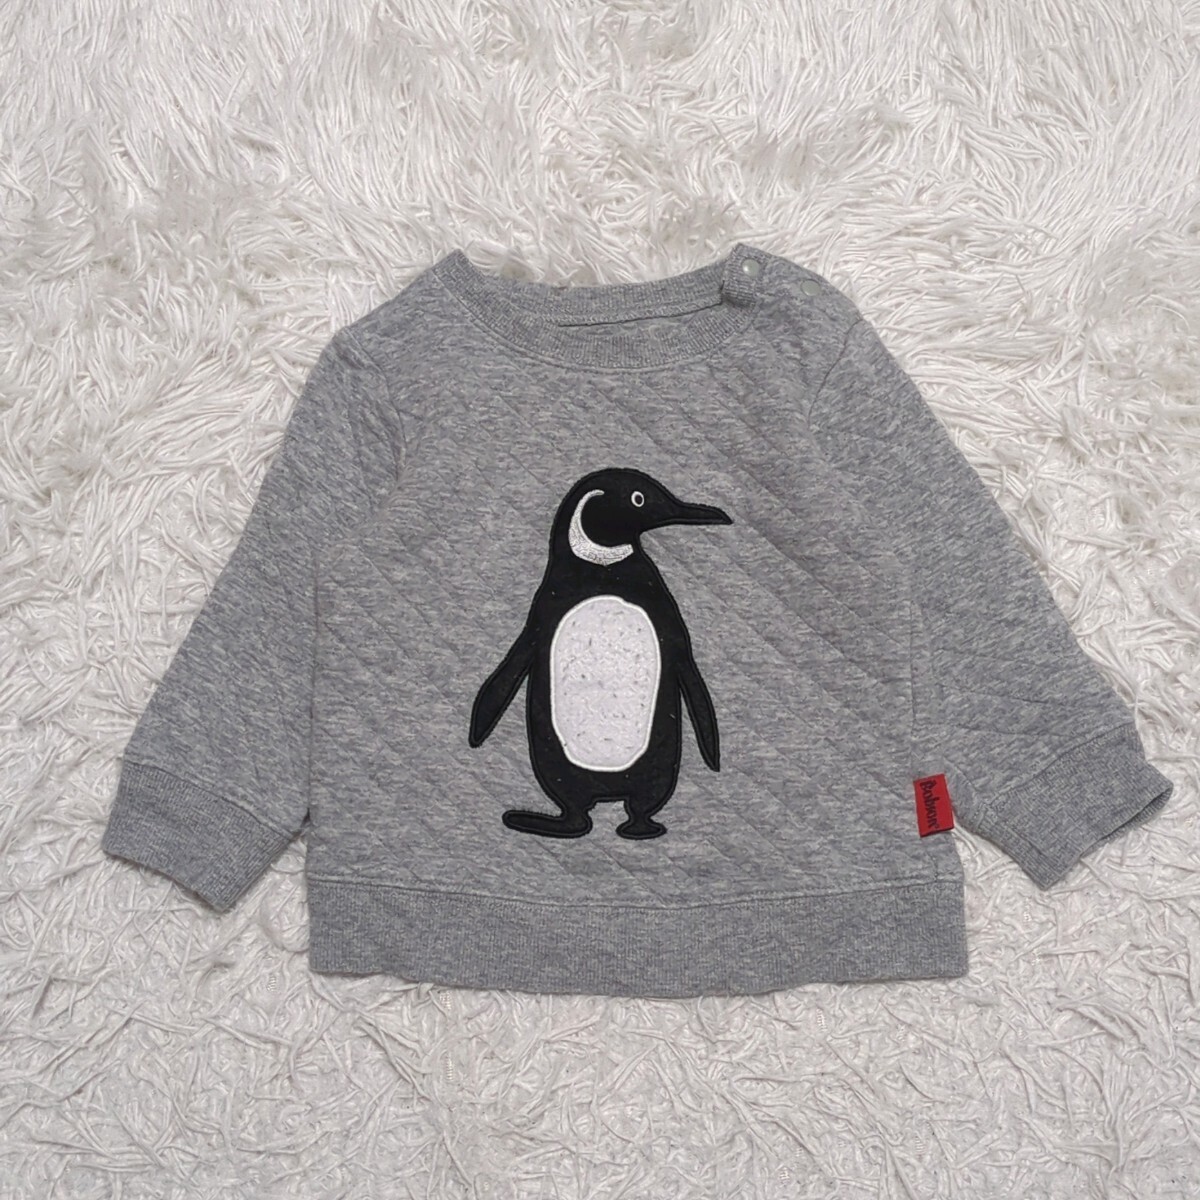 【送料無料】BOBSON ボブソン キムラタン スウェット トレーナー 80cm ペンギン ベビー 子供服の画像1